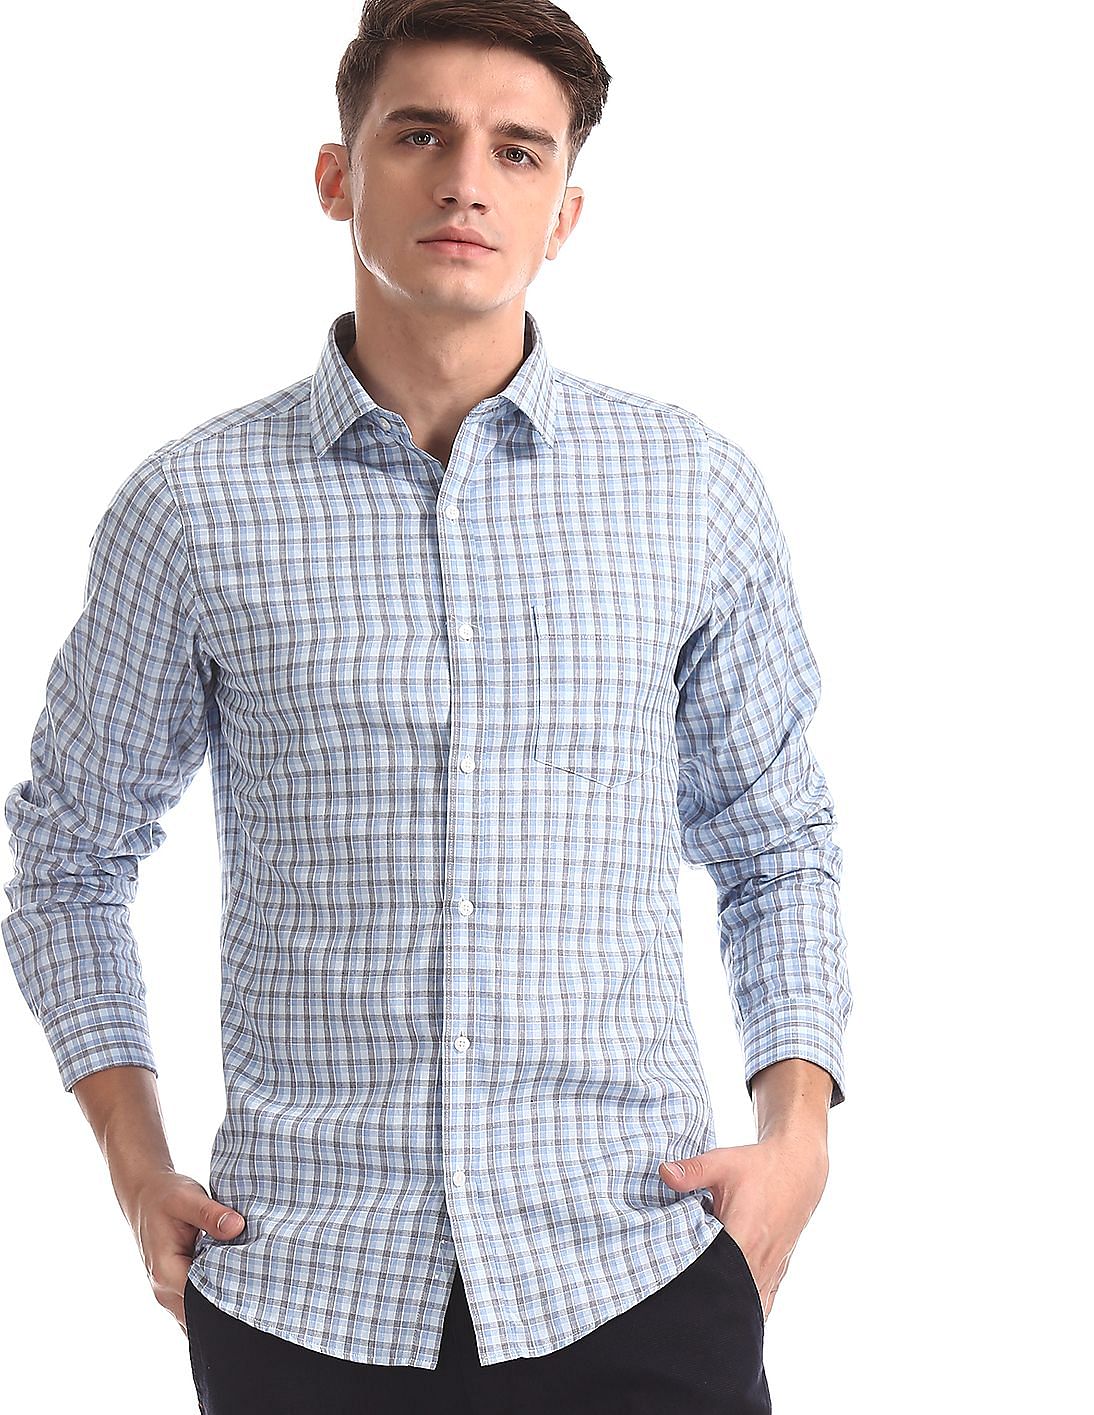 Buy Excalibur Blue Slim Fit Check Shirt - NNNOW.com